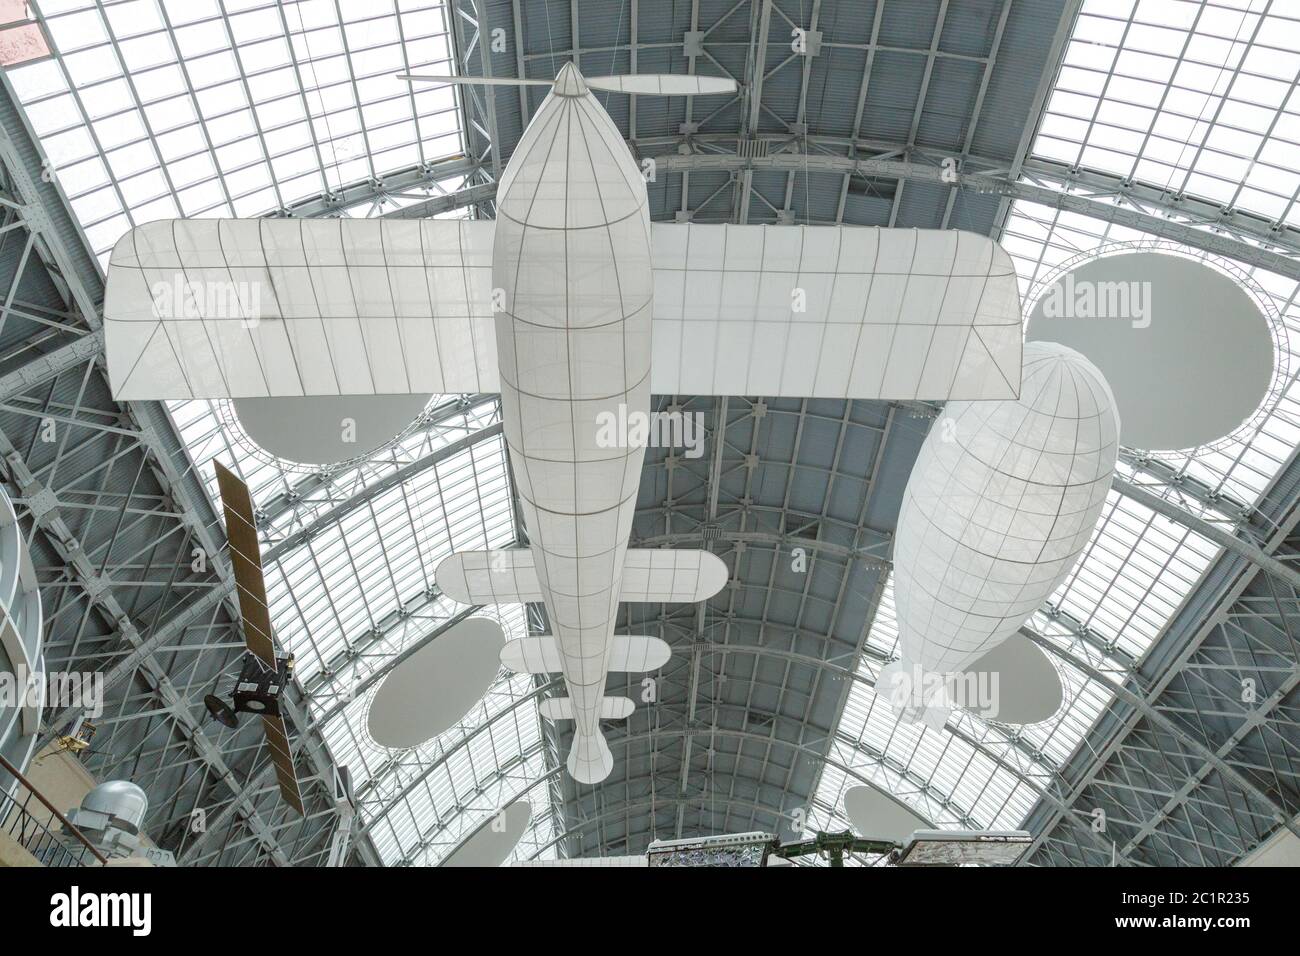 Mosca, Russia - 28 novembre 2018: Modelli aerei e aerei. Interno del padiglione spaziale al VDNH Foto Stock